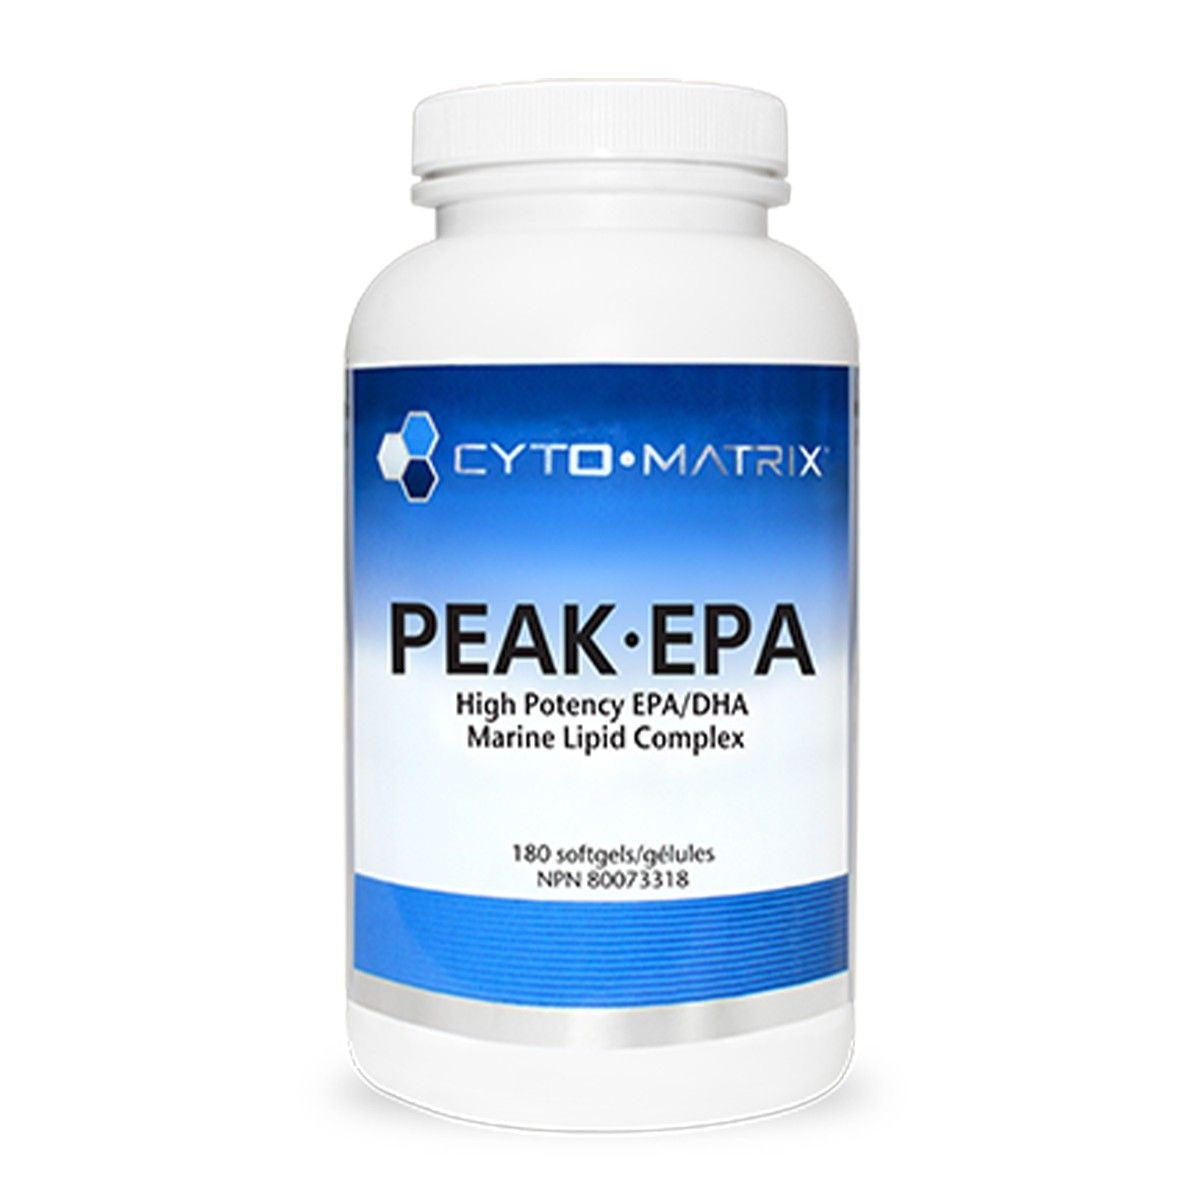 Cyto Matrix Peak EPA 180 soft gels